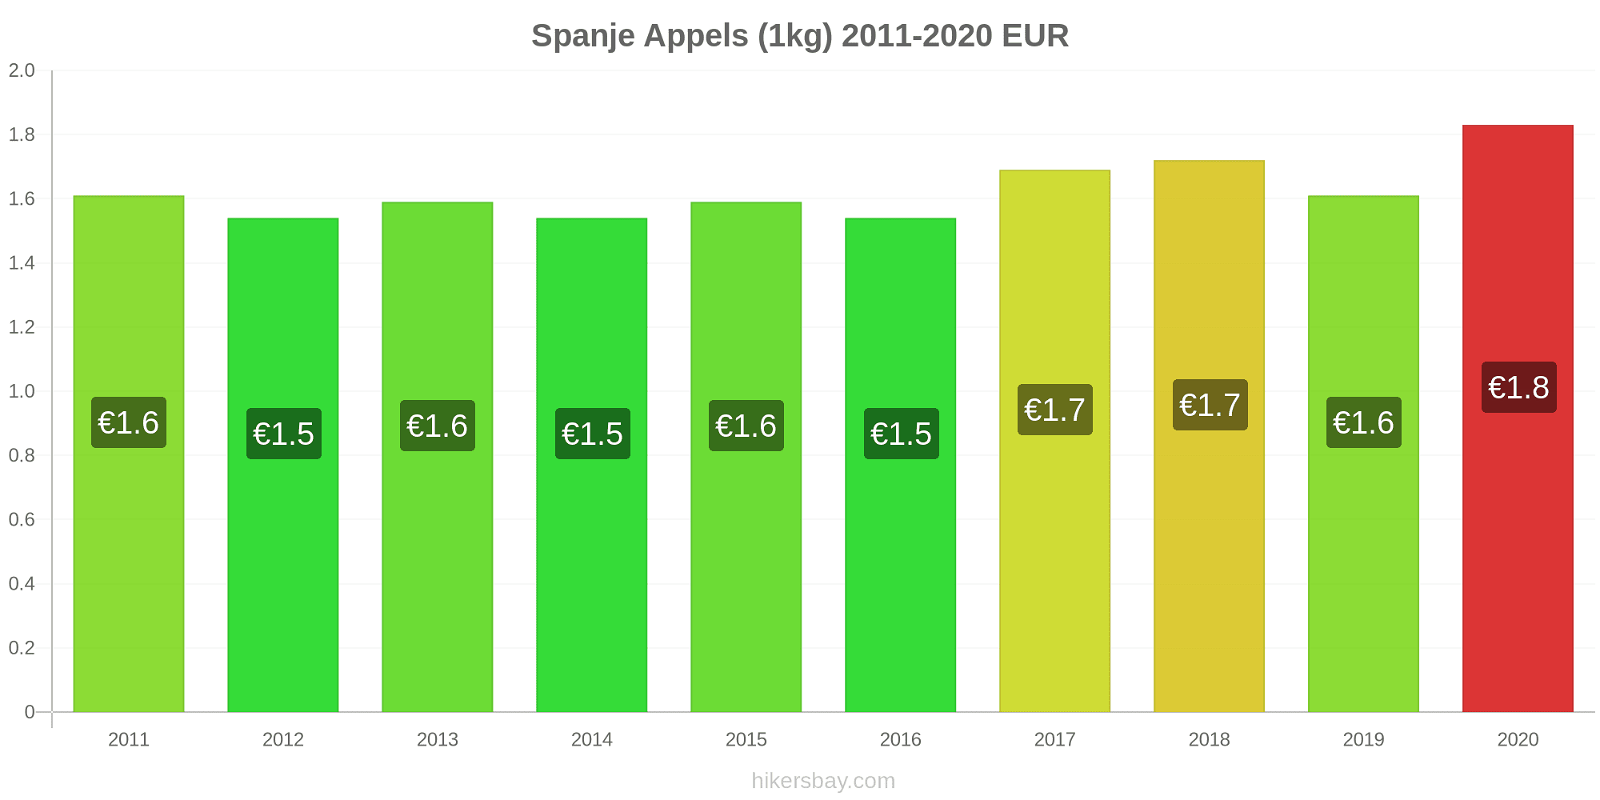 Spanje prijswijzigingen Appels (1kg) hikersbay.com